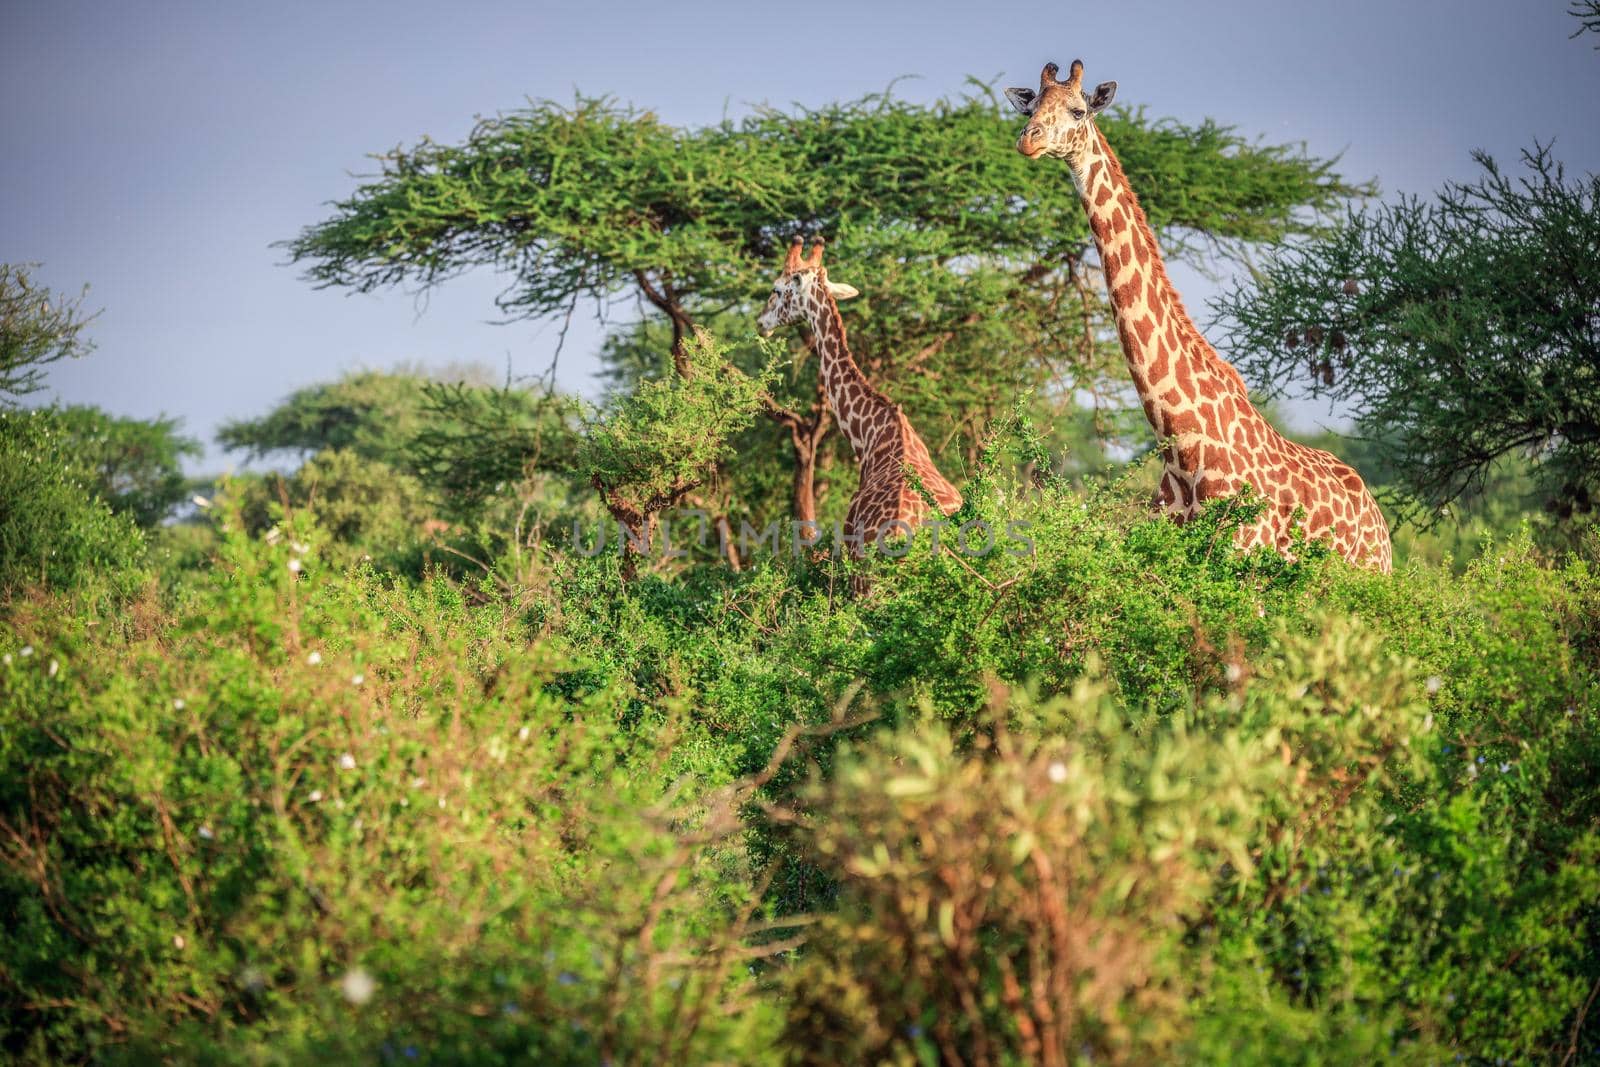 Masai Giraffe in Tsavo East Nationalpark, Kenya, Africa